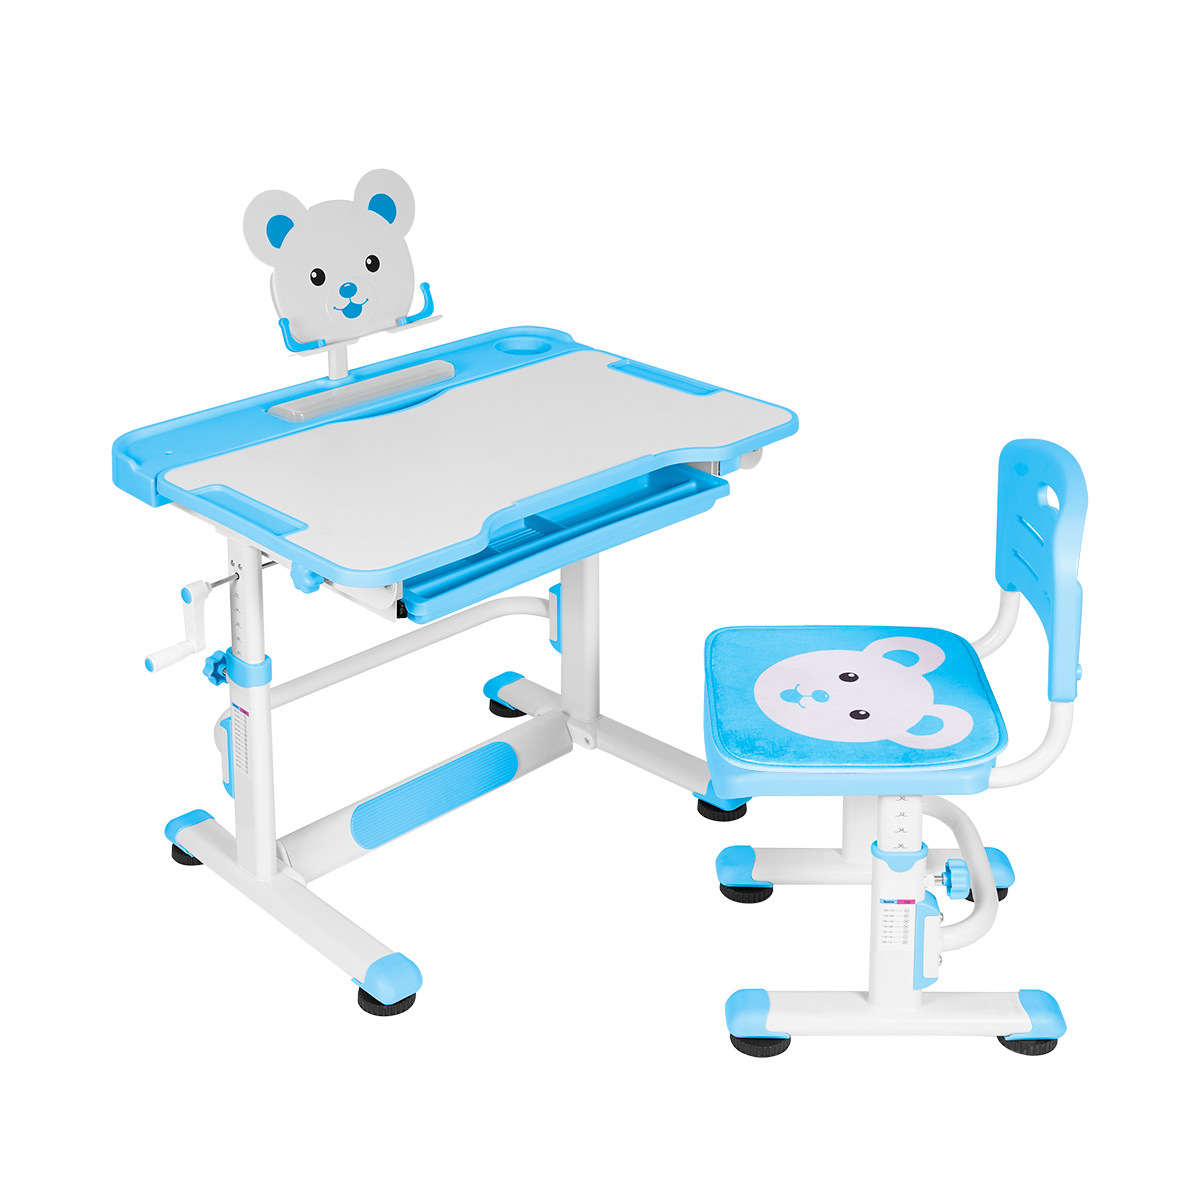 Купить Комплект Anatomica Litra детская парта, стул, выдвижной ящик и подставка белый/голубой,